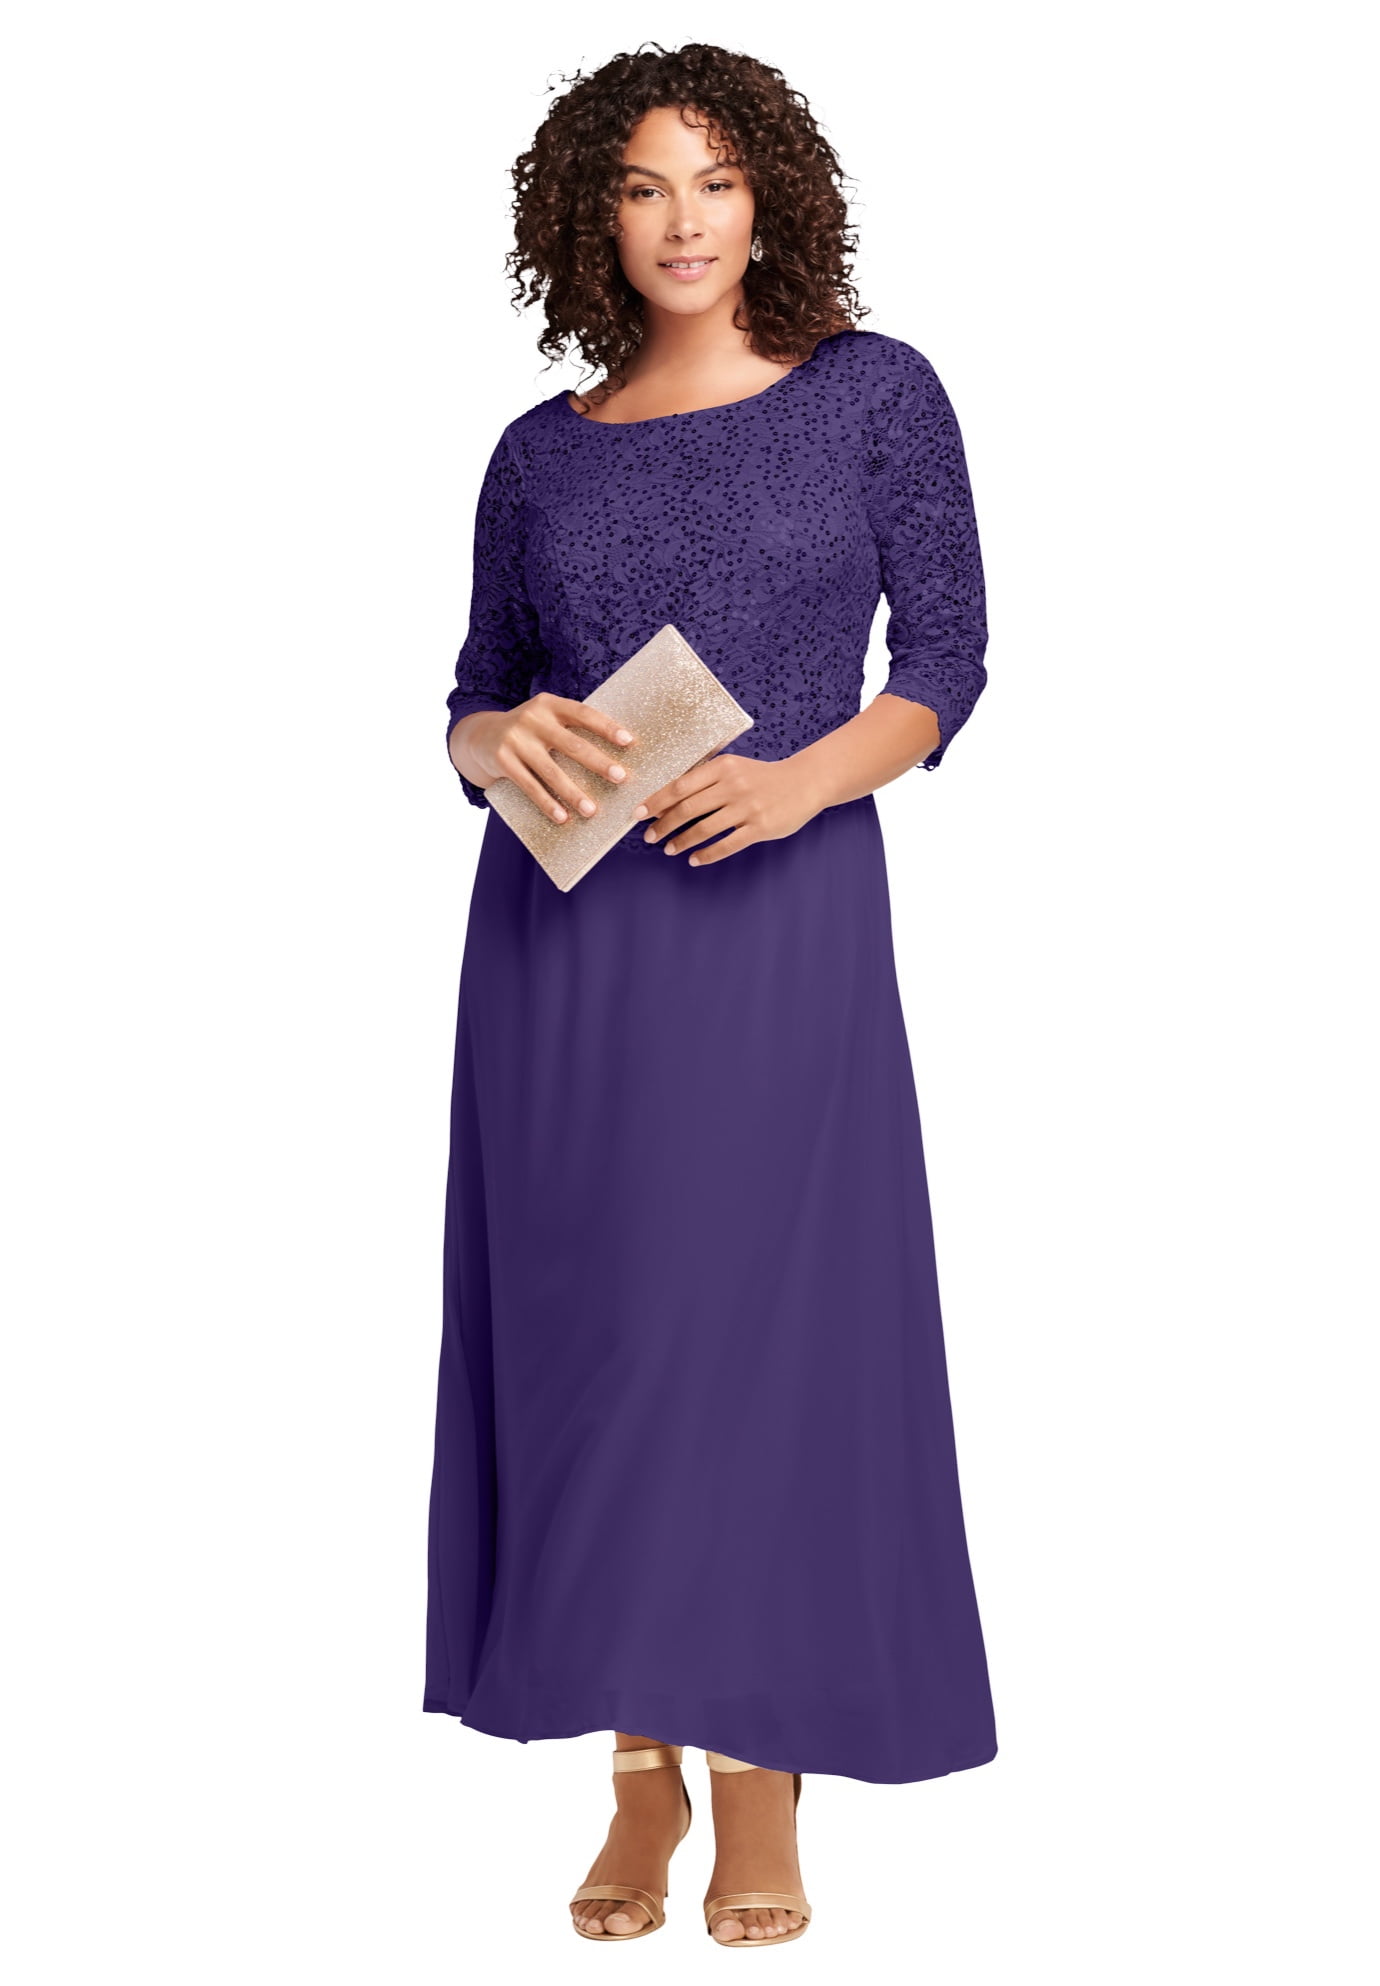 Roaman's Roaman's Women's Plus Size Lace Popover Dress